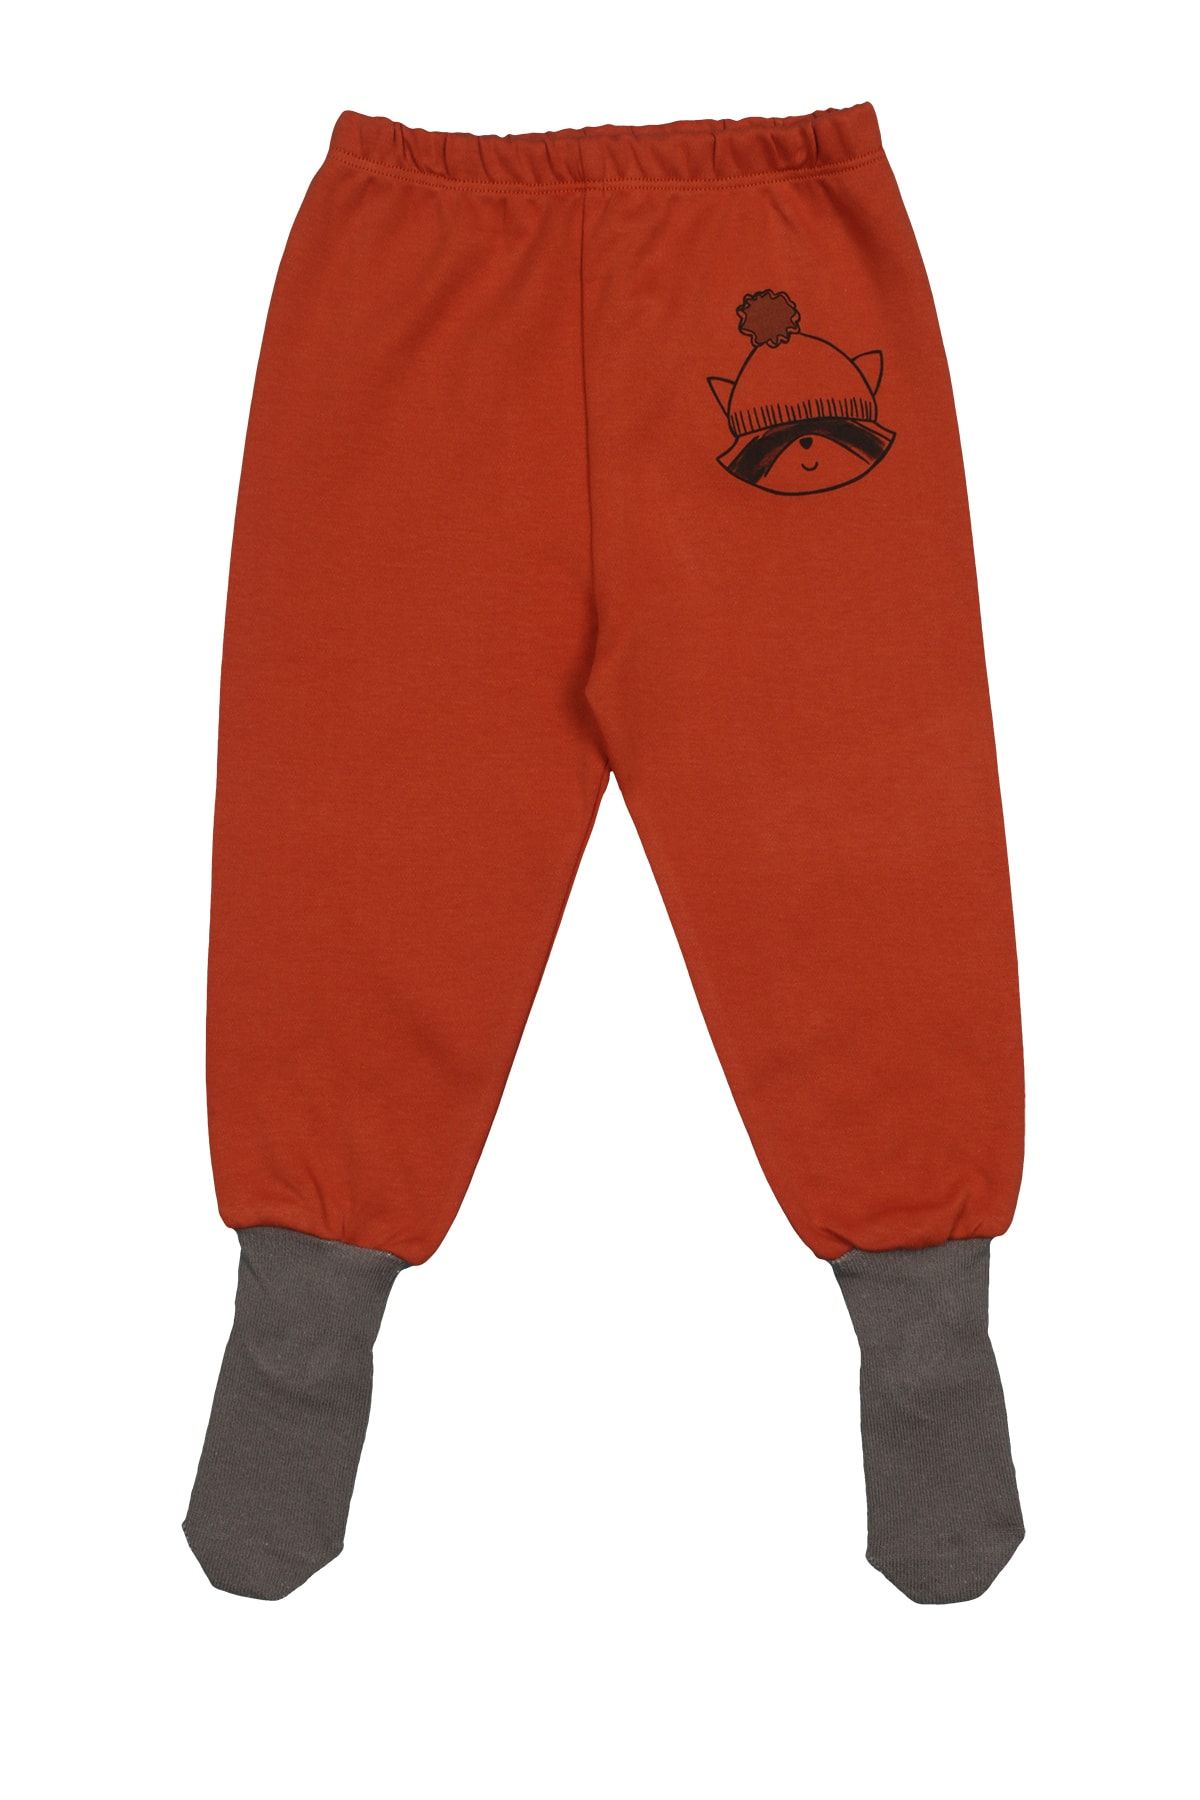 Melekpare Kız Erkek Bebek Patikli Pantolon Kendinden Çoraplı Alt Pijama %100 Organik Pamuk Yumuşacık Kumaş